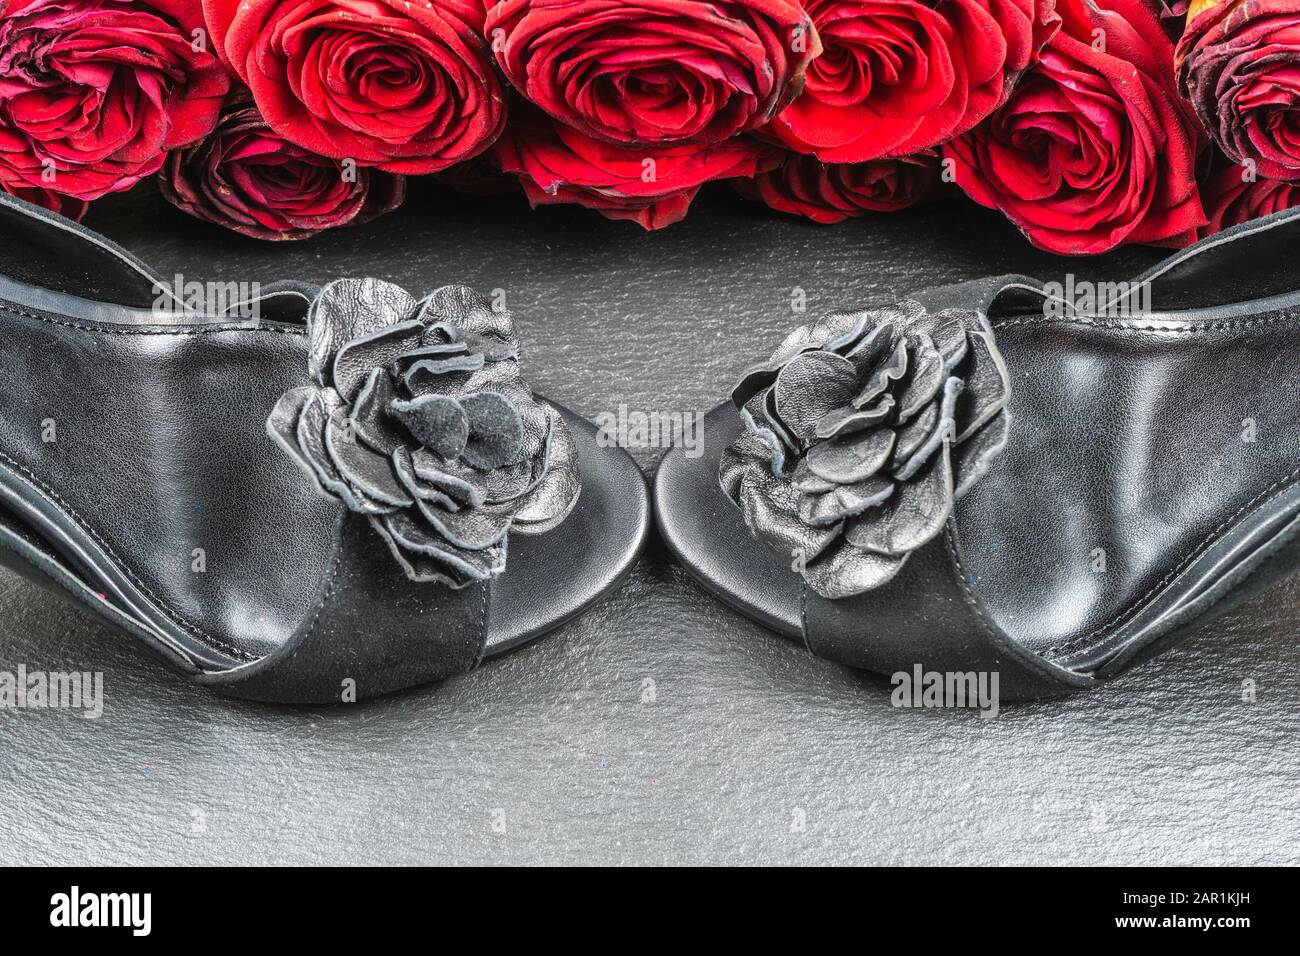 Schuhe mit hohem Absatz, Rosen auf schwarzem Steingrund Stockfotografie -  Alamy